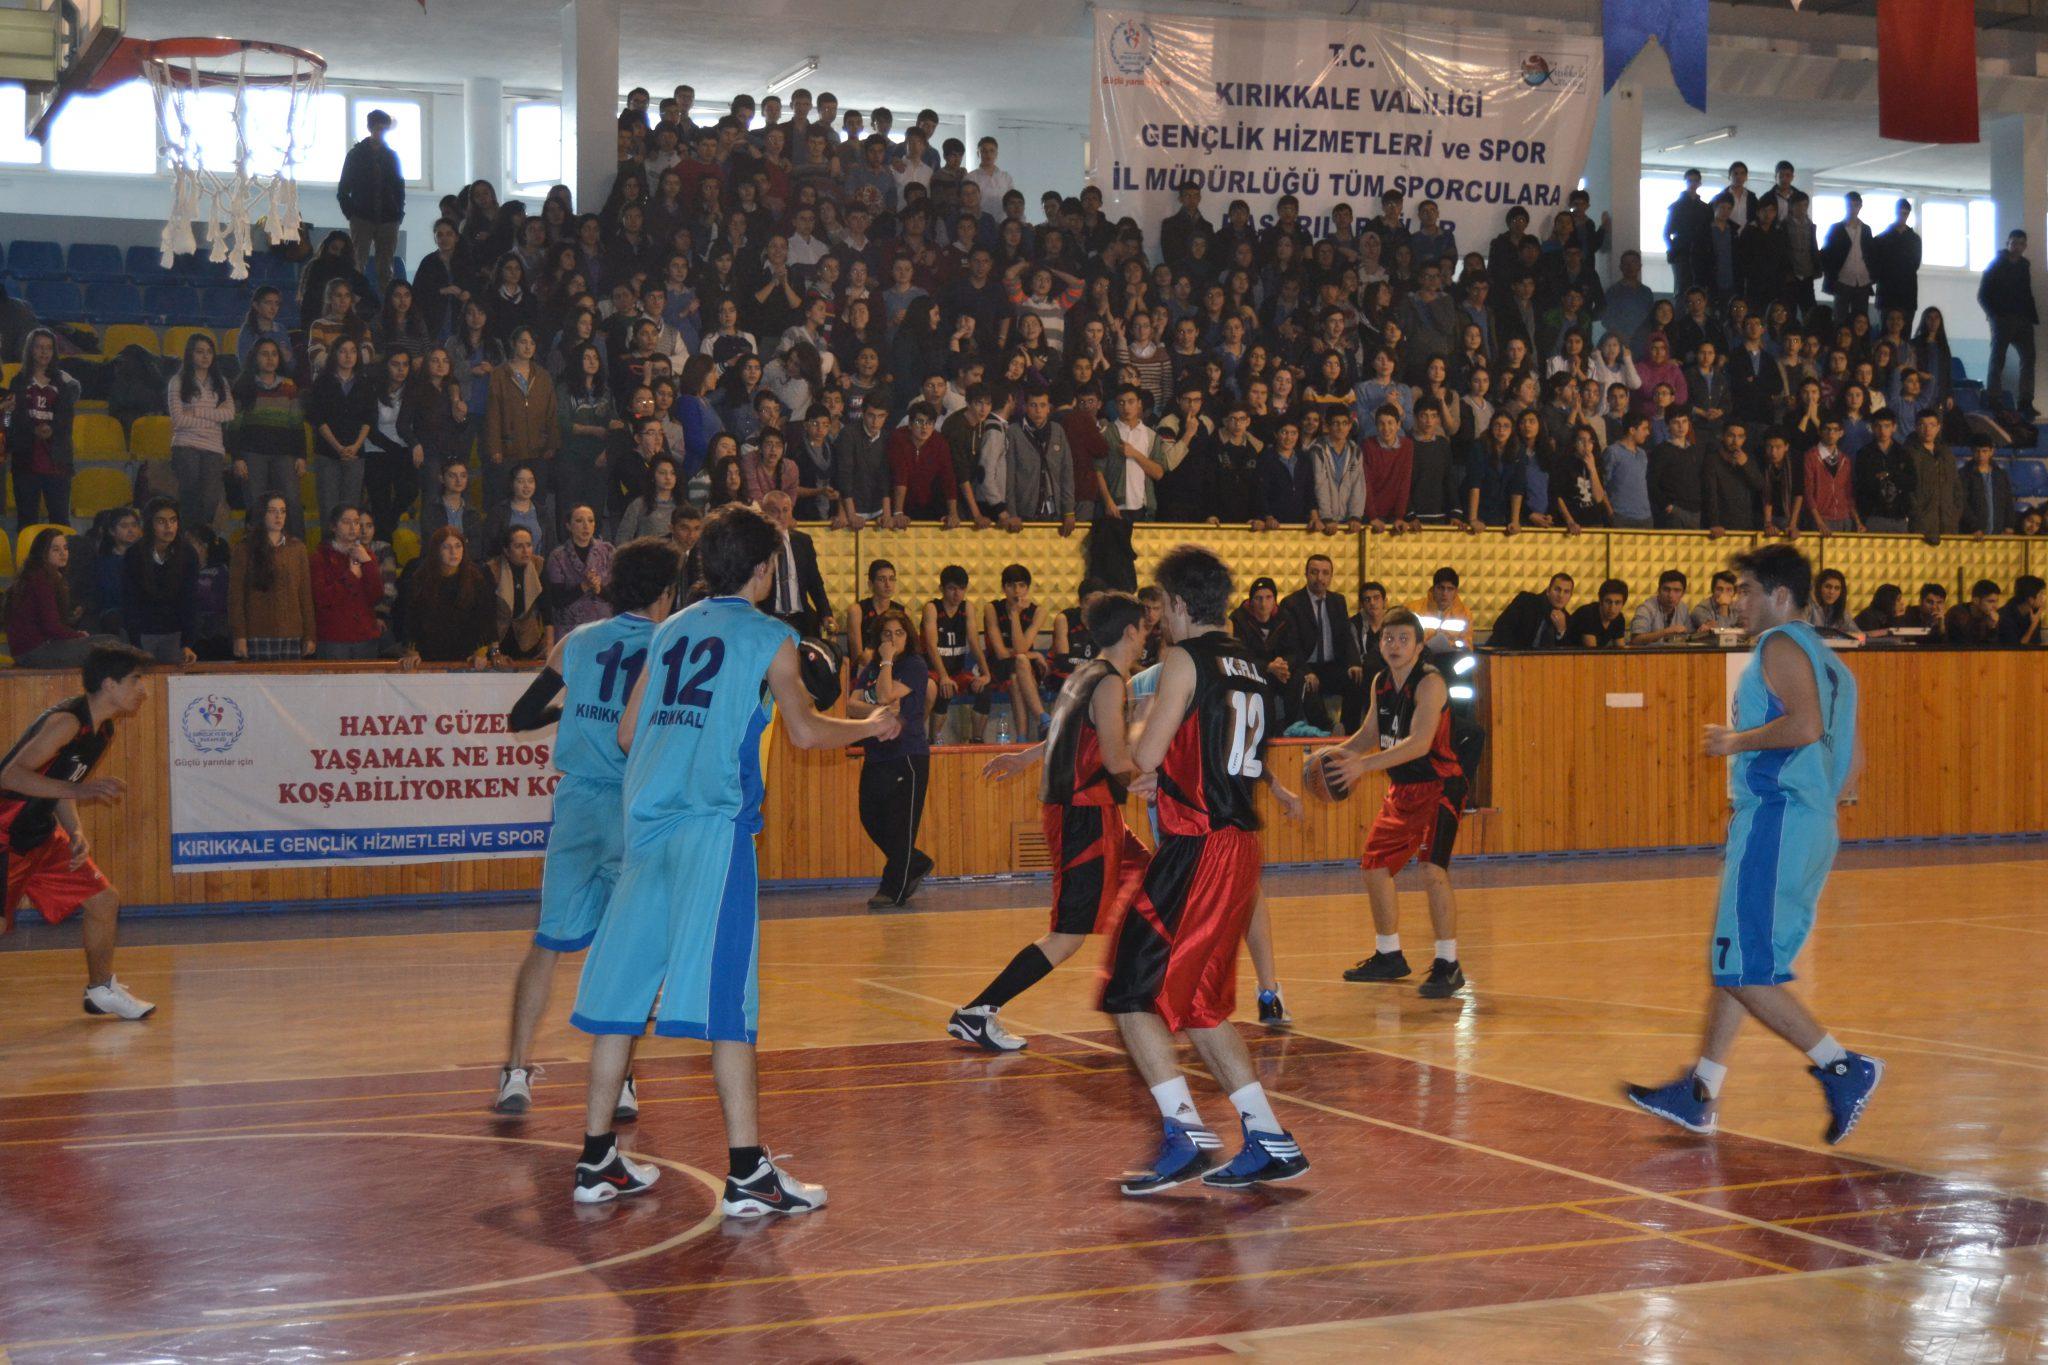 Gençler basketbolda yarıştı - Kırıkkale Haber, Son Dakika Kırıkkale Haberleri